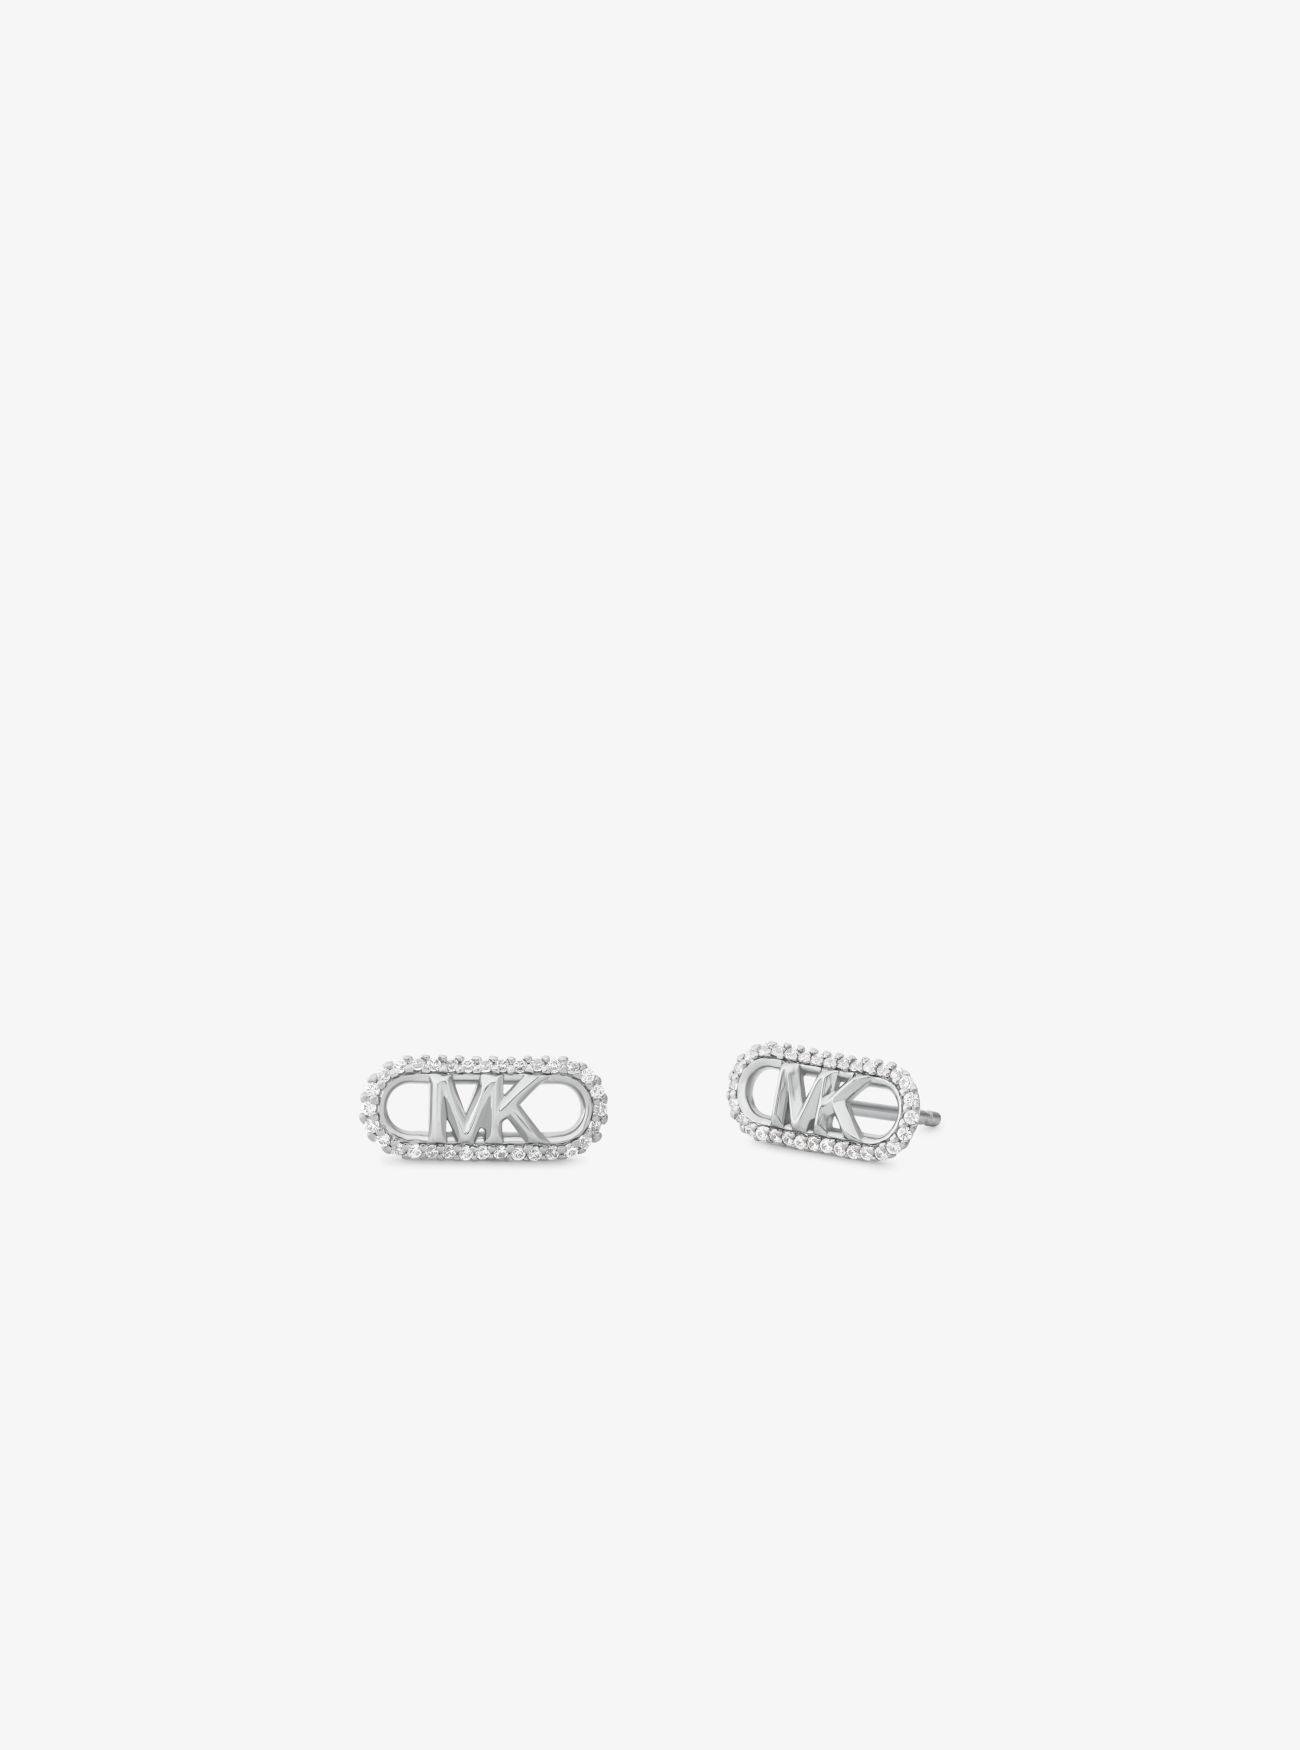 MKPendientes de plata de ley chapada en metal precioso con incrustaciones y logotipo imperio - Plateado - Michael Kors